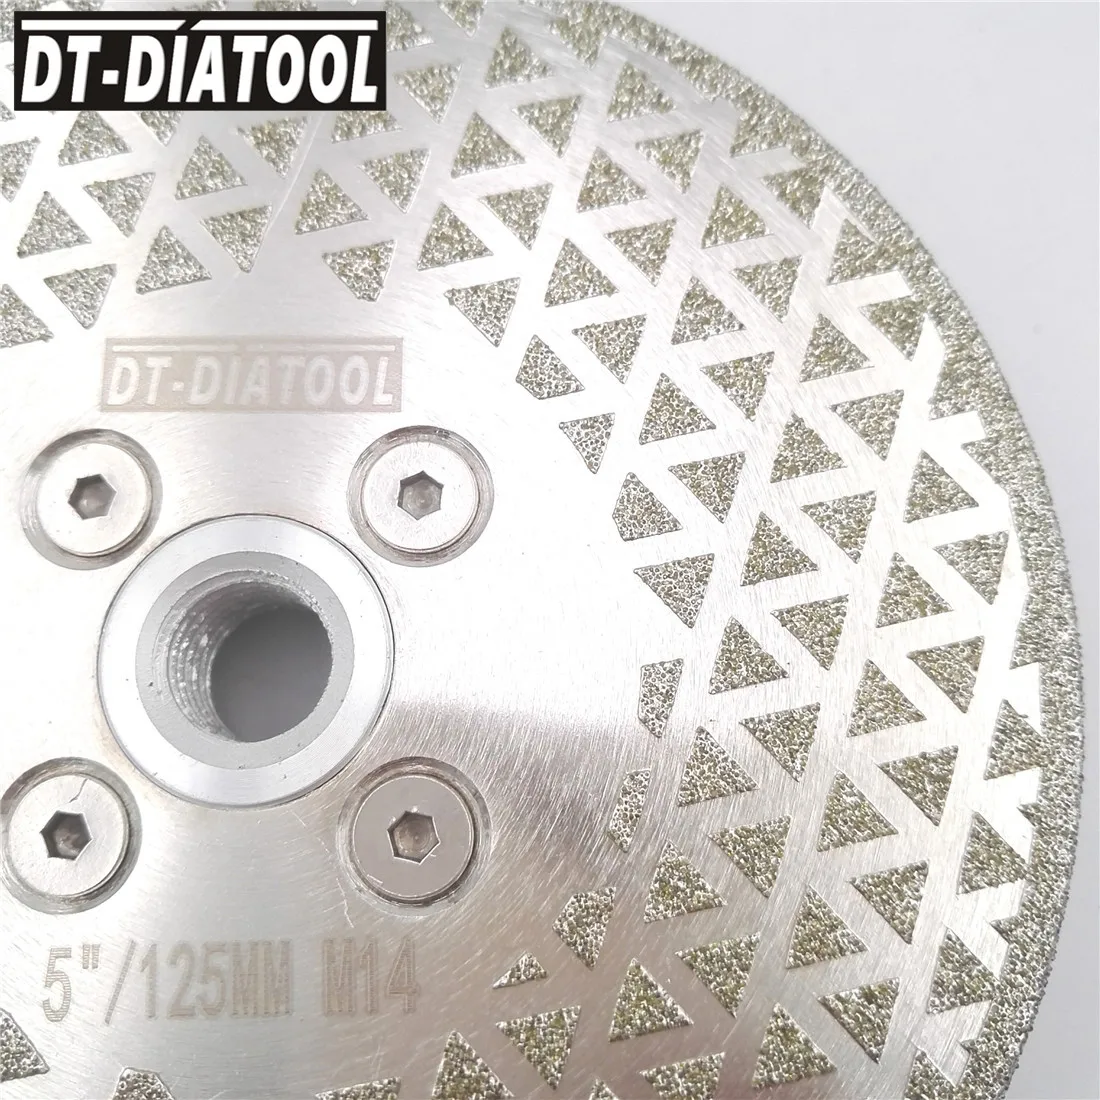 DT-DIATOOL 2 шт. 5 дюймов/125 мм алмазный режущий и шлифовальный круг с гальваническим покрытием, отрезной диск с одной стороной шлифования для плит... от AliExpress RU&CIS NEW